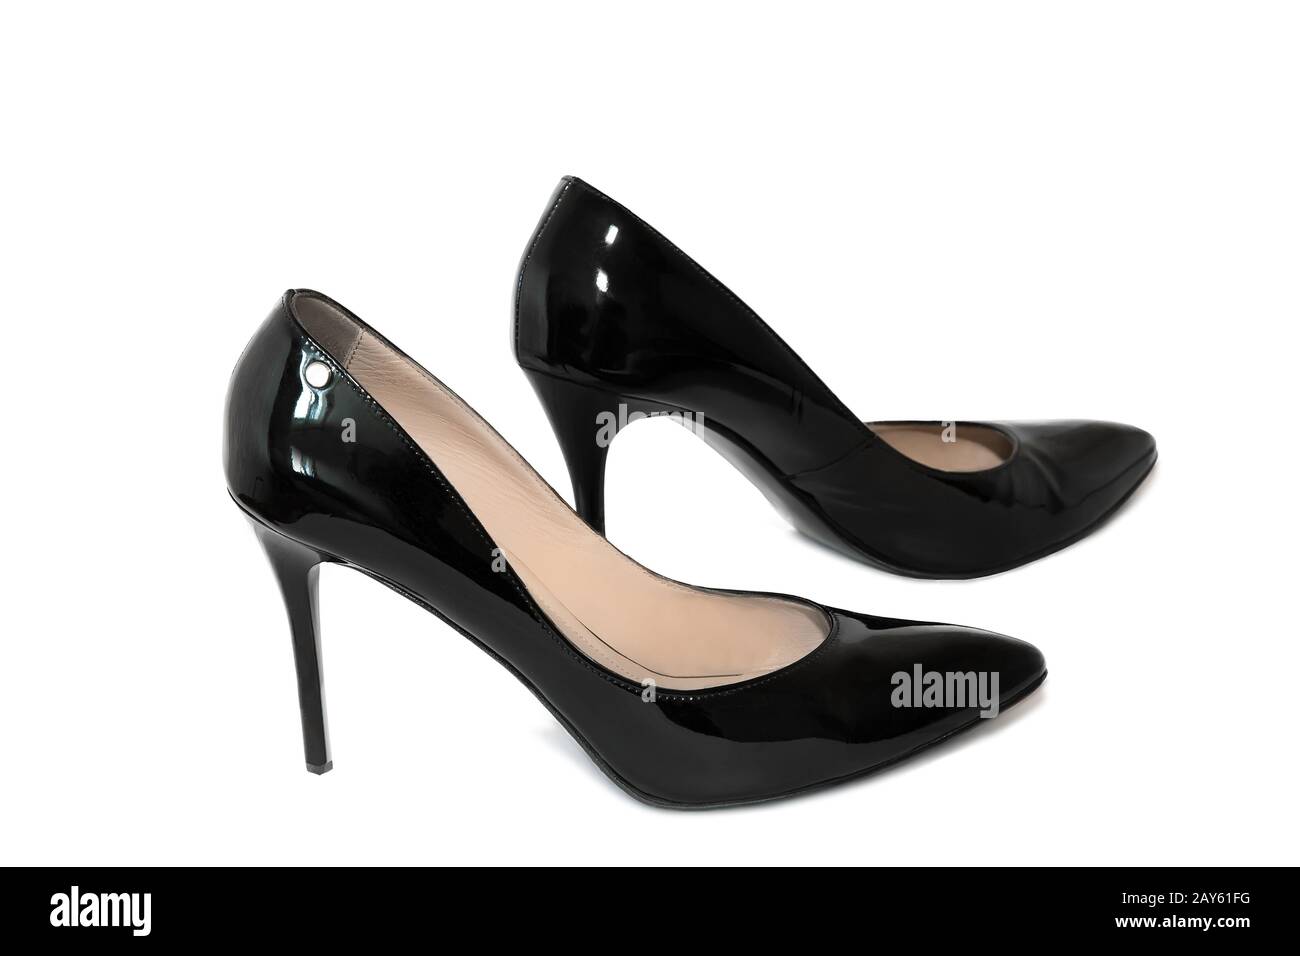 Chaussures noires pour femme au talon haut sur fond blanc. Banque D'Images